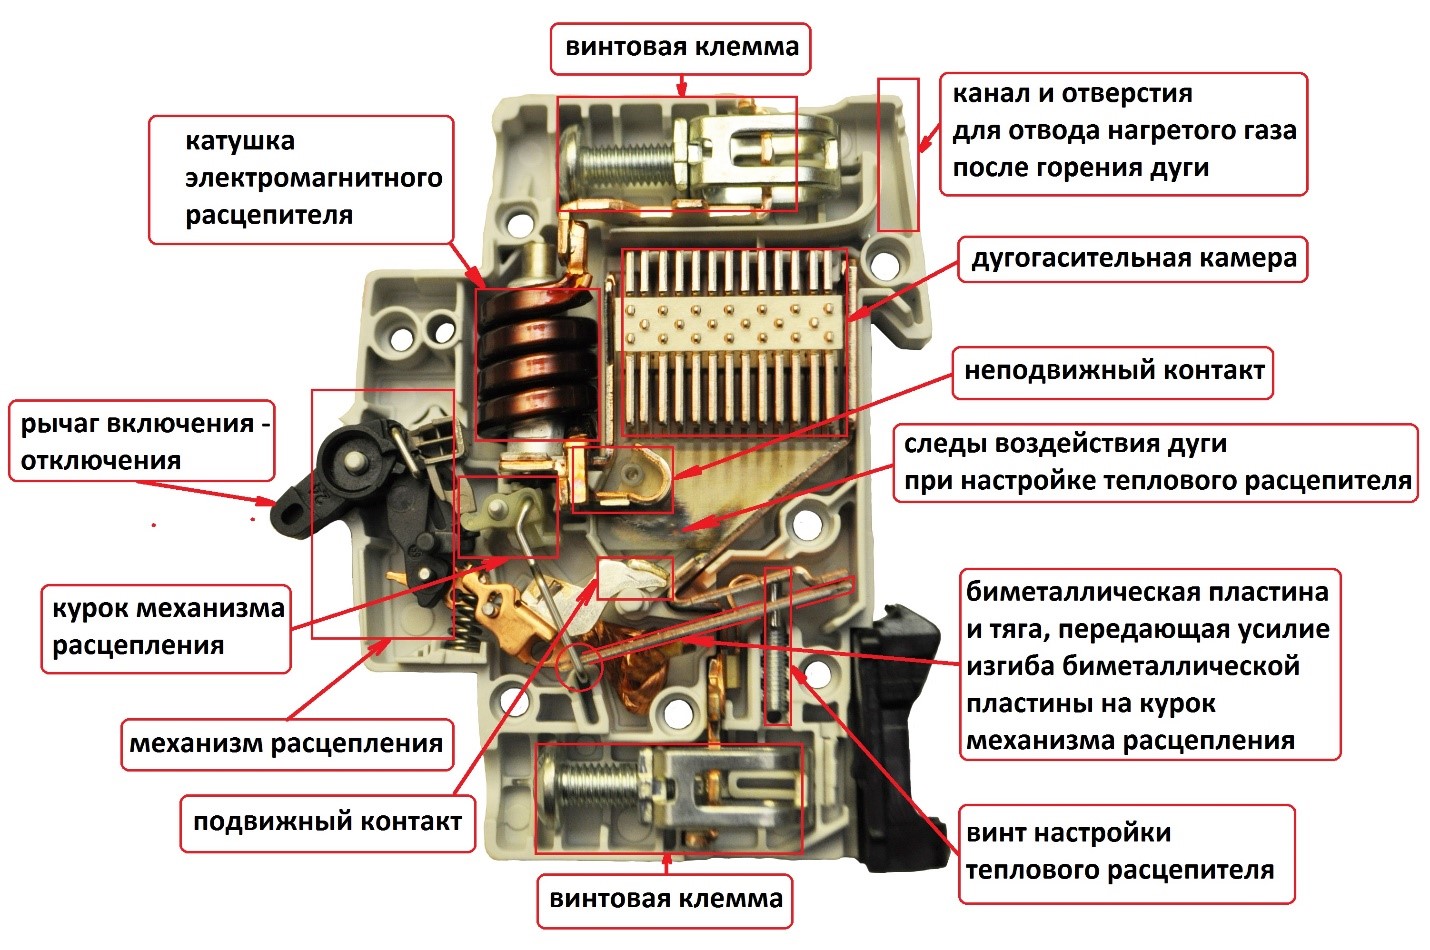 Описание и принцип работы автоматического выключателя АП-50